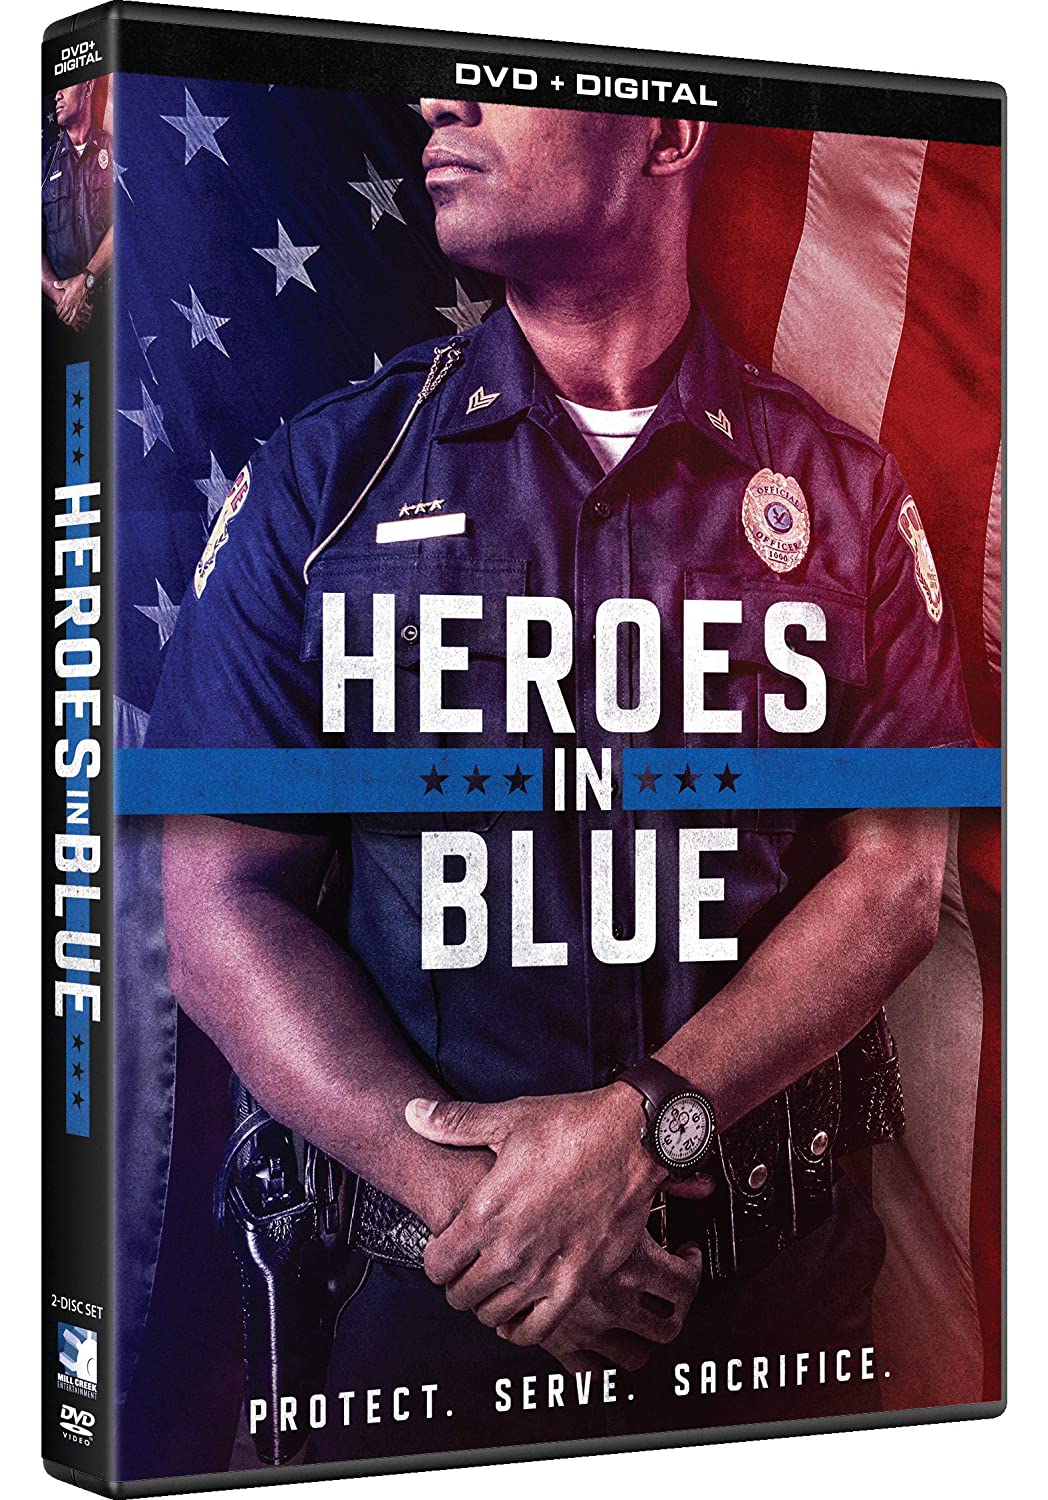 Heroes In Blue (DVD + Digital Copy) - DVD [ 2018 ]  - Travel Documentaries On DVD